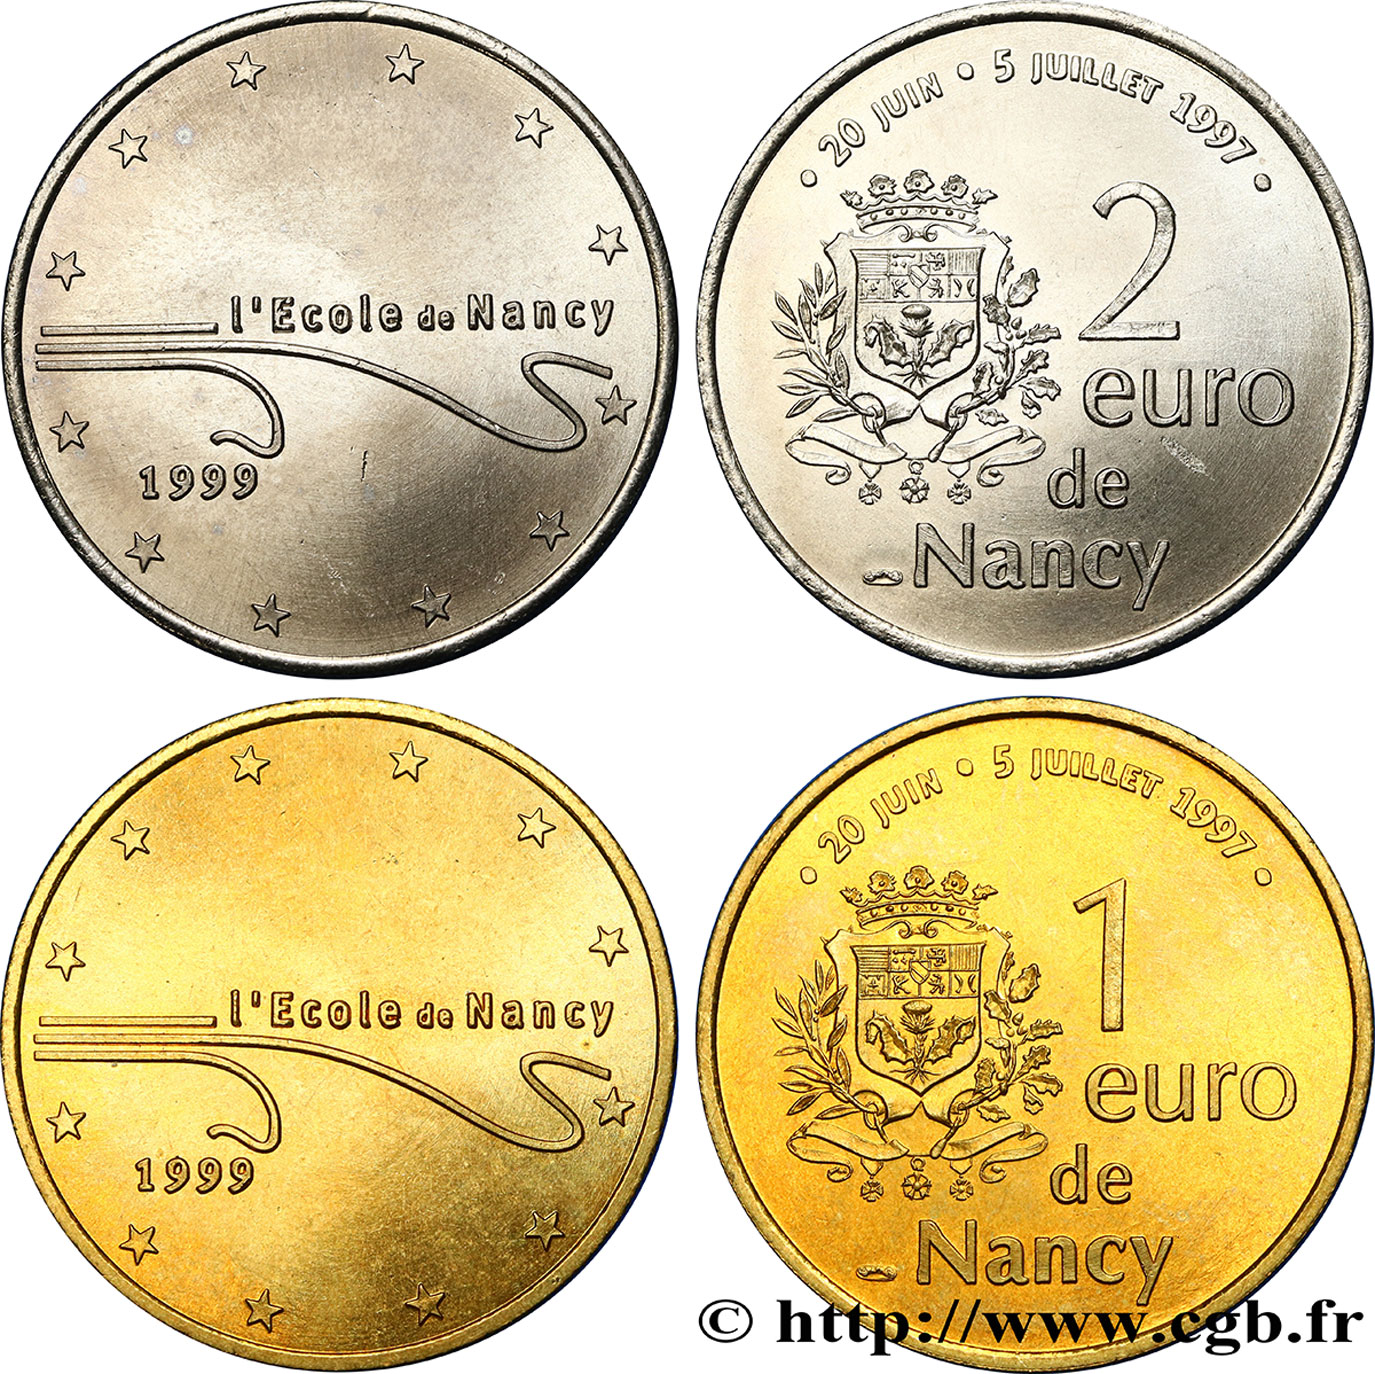 FRANCE Lot 1et 2 Euro de Nancy (20 juin - 5 juillet 1997) 1997 MS